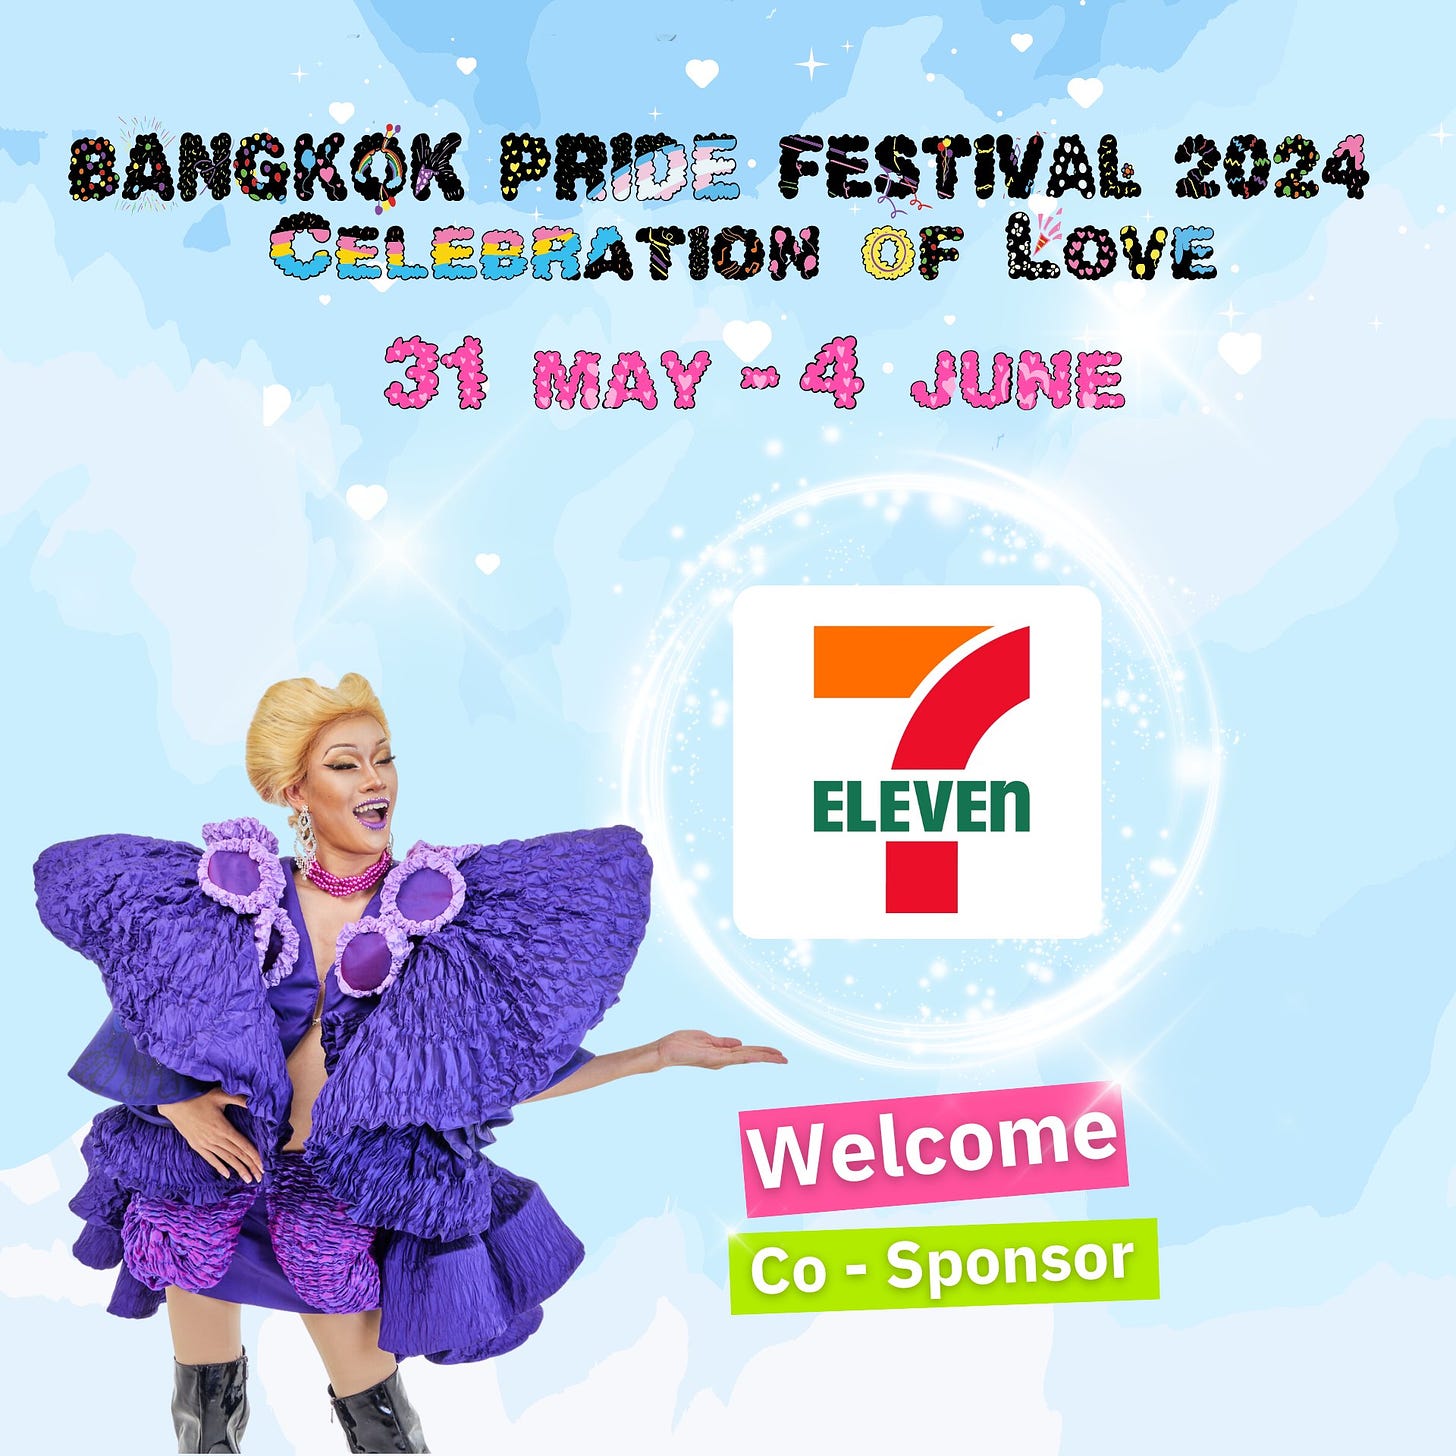 อาจเป็นรูปภาพของ 1 คน และ ข้อความพูดว่า "BANGKOK PRIDE FESTIVAL 2024 製 LEBRATION OF KOVE 31 MAY MAY-4 4 JUNE ELEVEN Welcome Co -Sponsor"